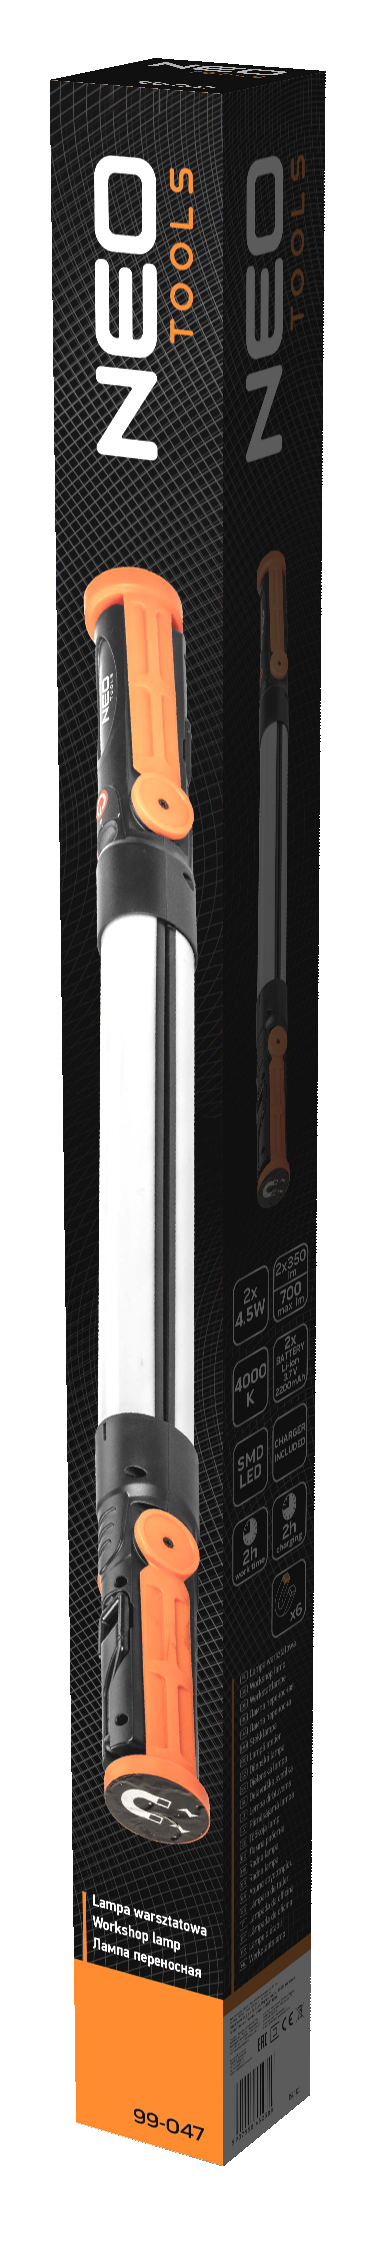 Аккумуляторный светильник для мастерских 2x350 лм складной SMD Neo Tools 99-047 - Фото #7